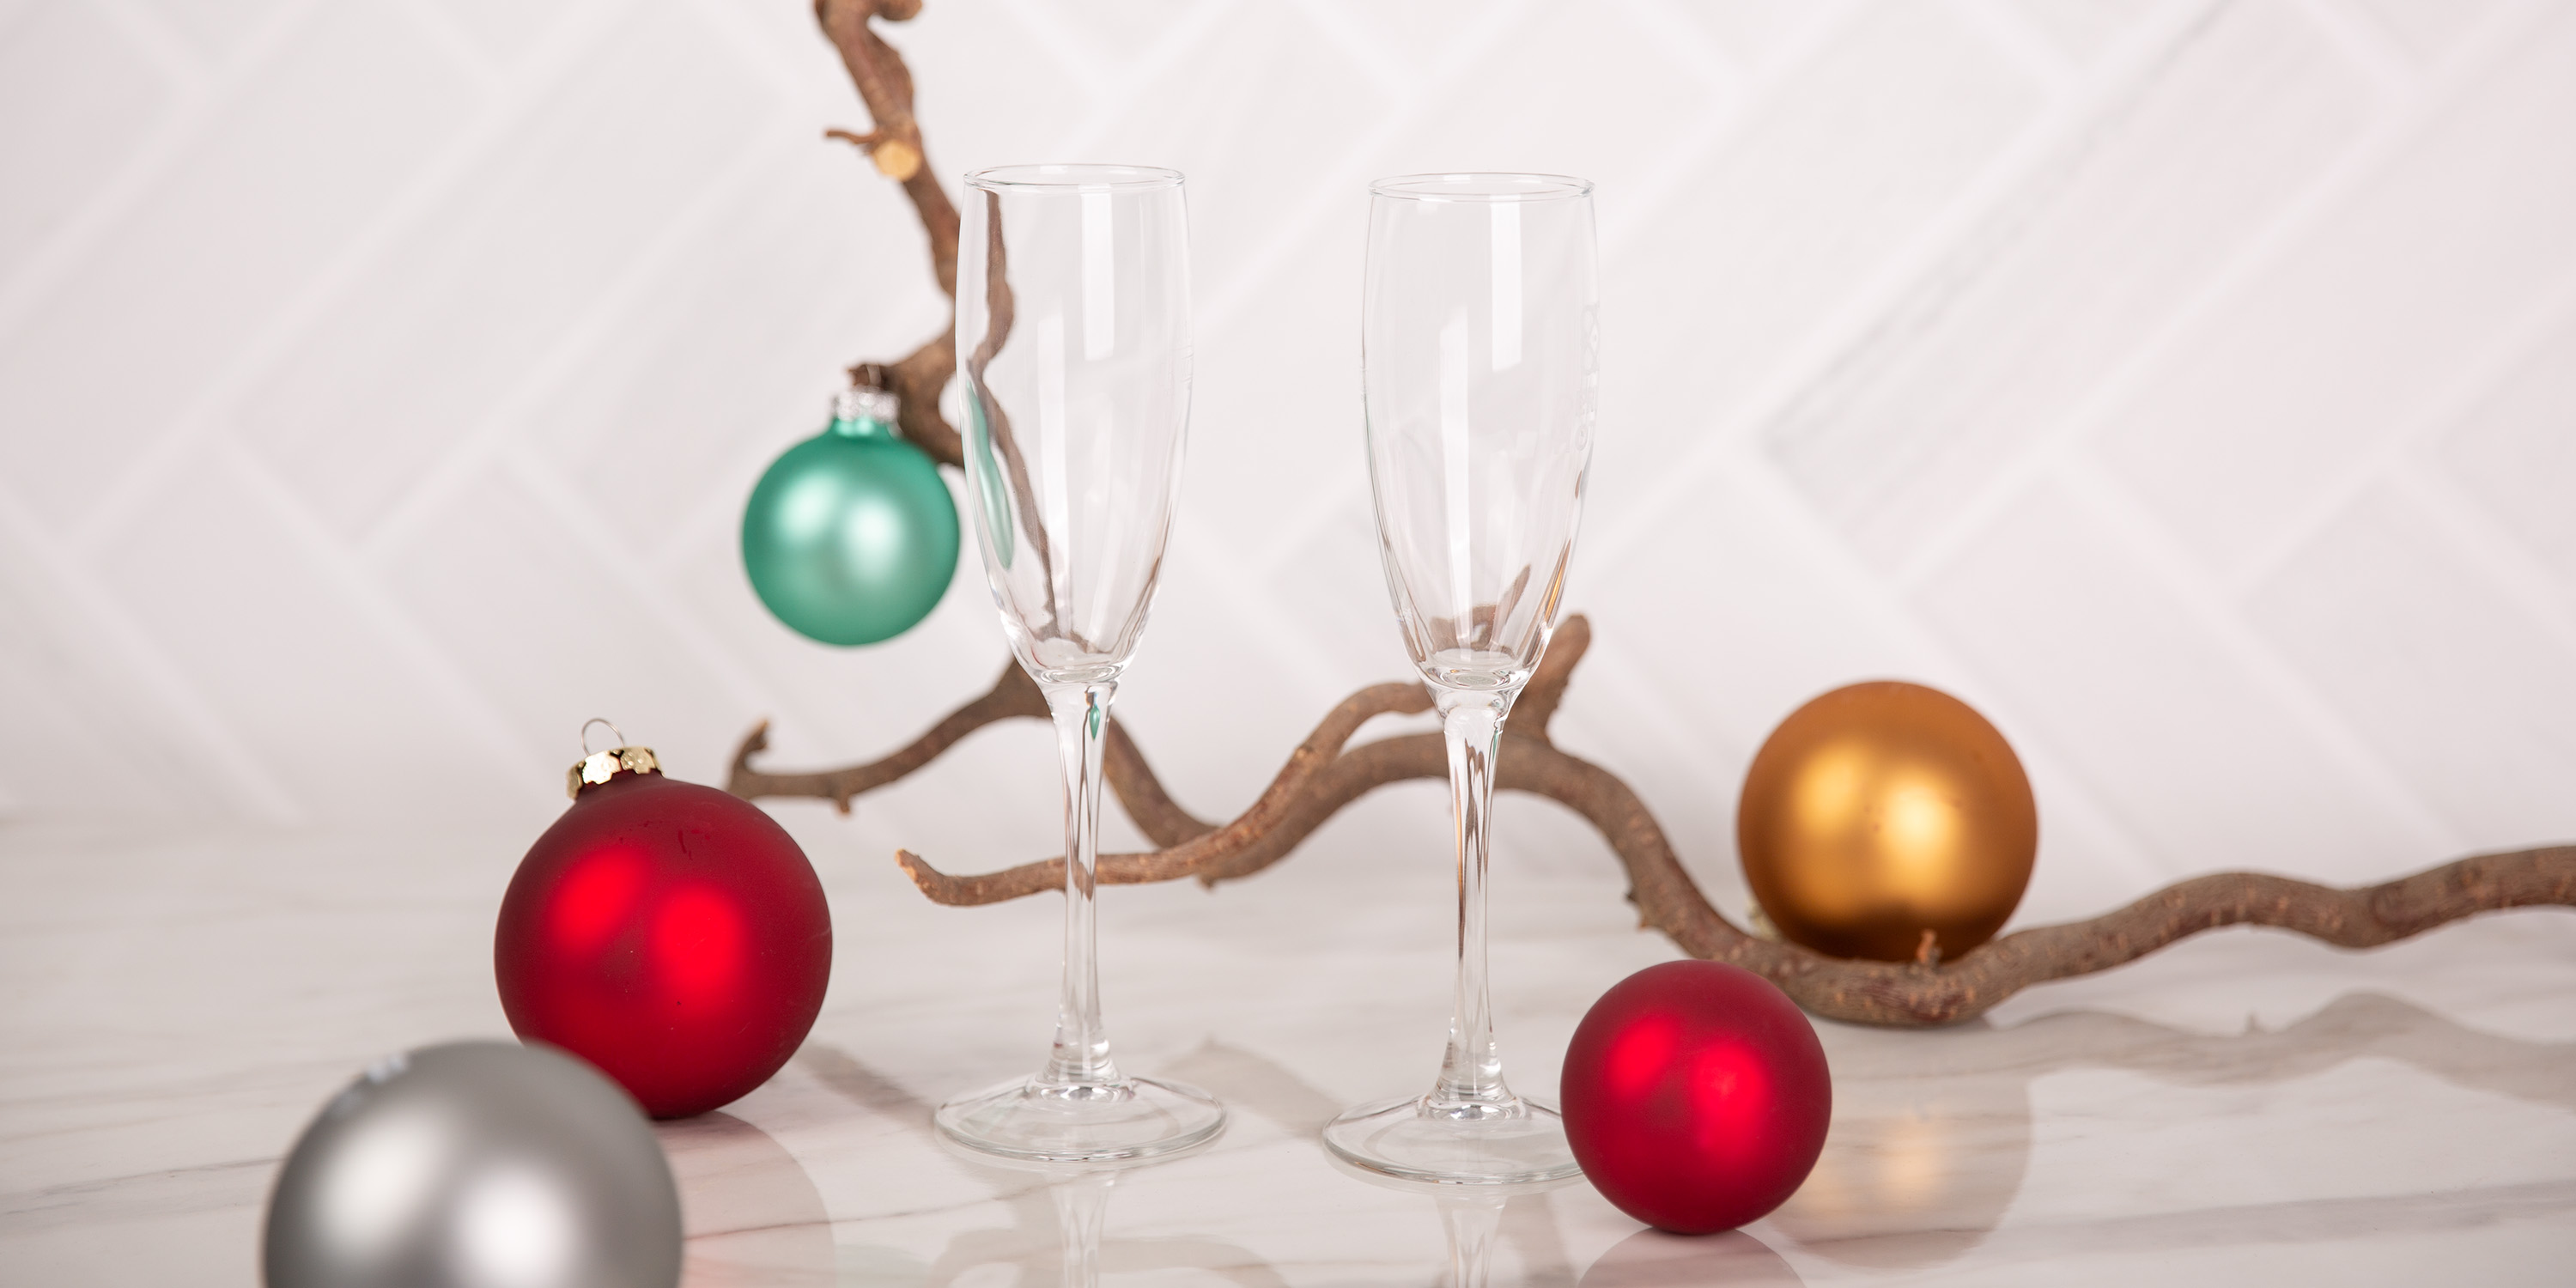 Zwei Sektgläser mit Weihnachtskugeln auf einem grauen Hintergrund